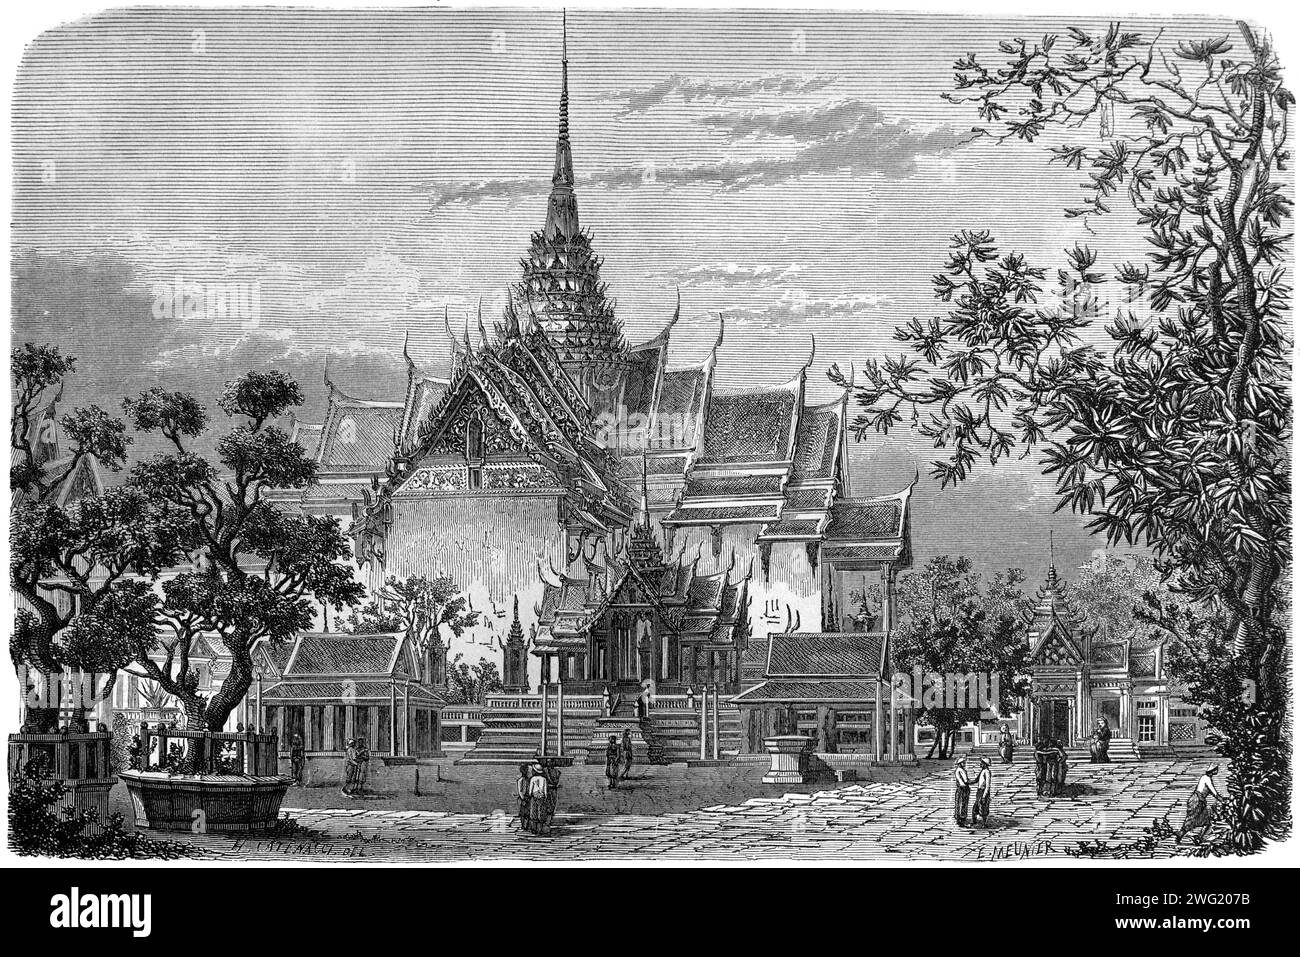 Phra Maha Prasat Groupe de bâtiments royaux dans le parc du Grand Palais ou Palais Royal et jardins Bangkok Thaïlande. Gravure vintage ou historique ou illustration 1863 Banque D'Images